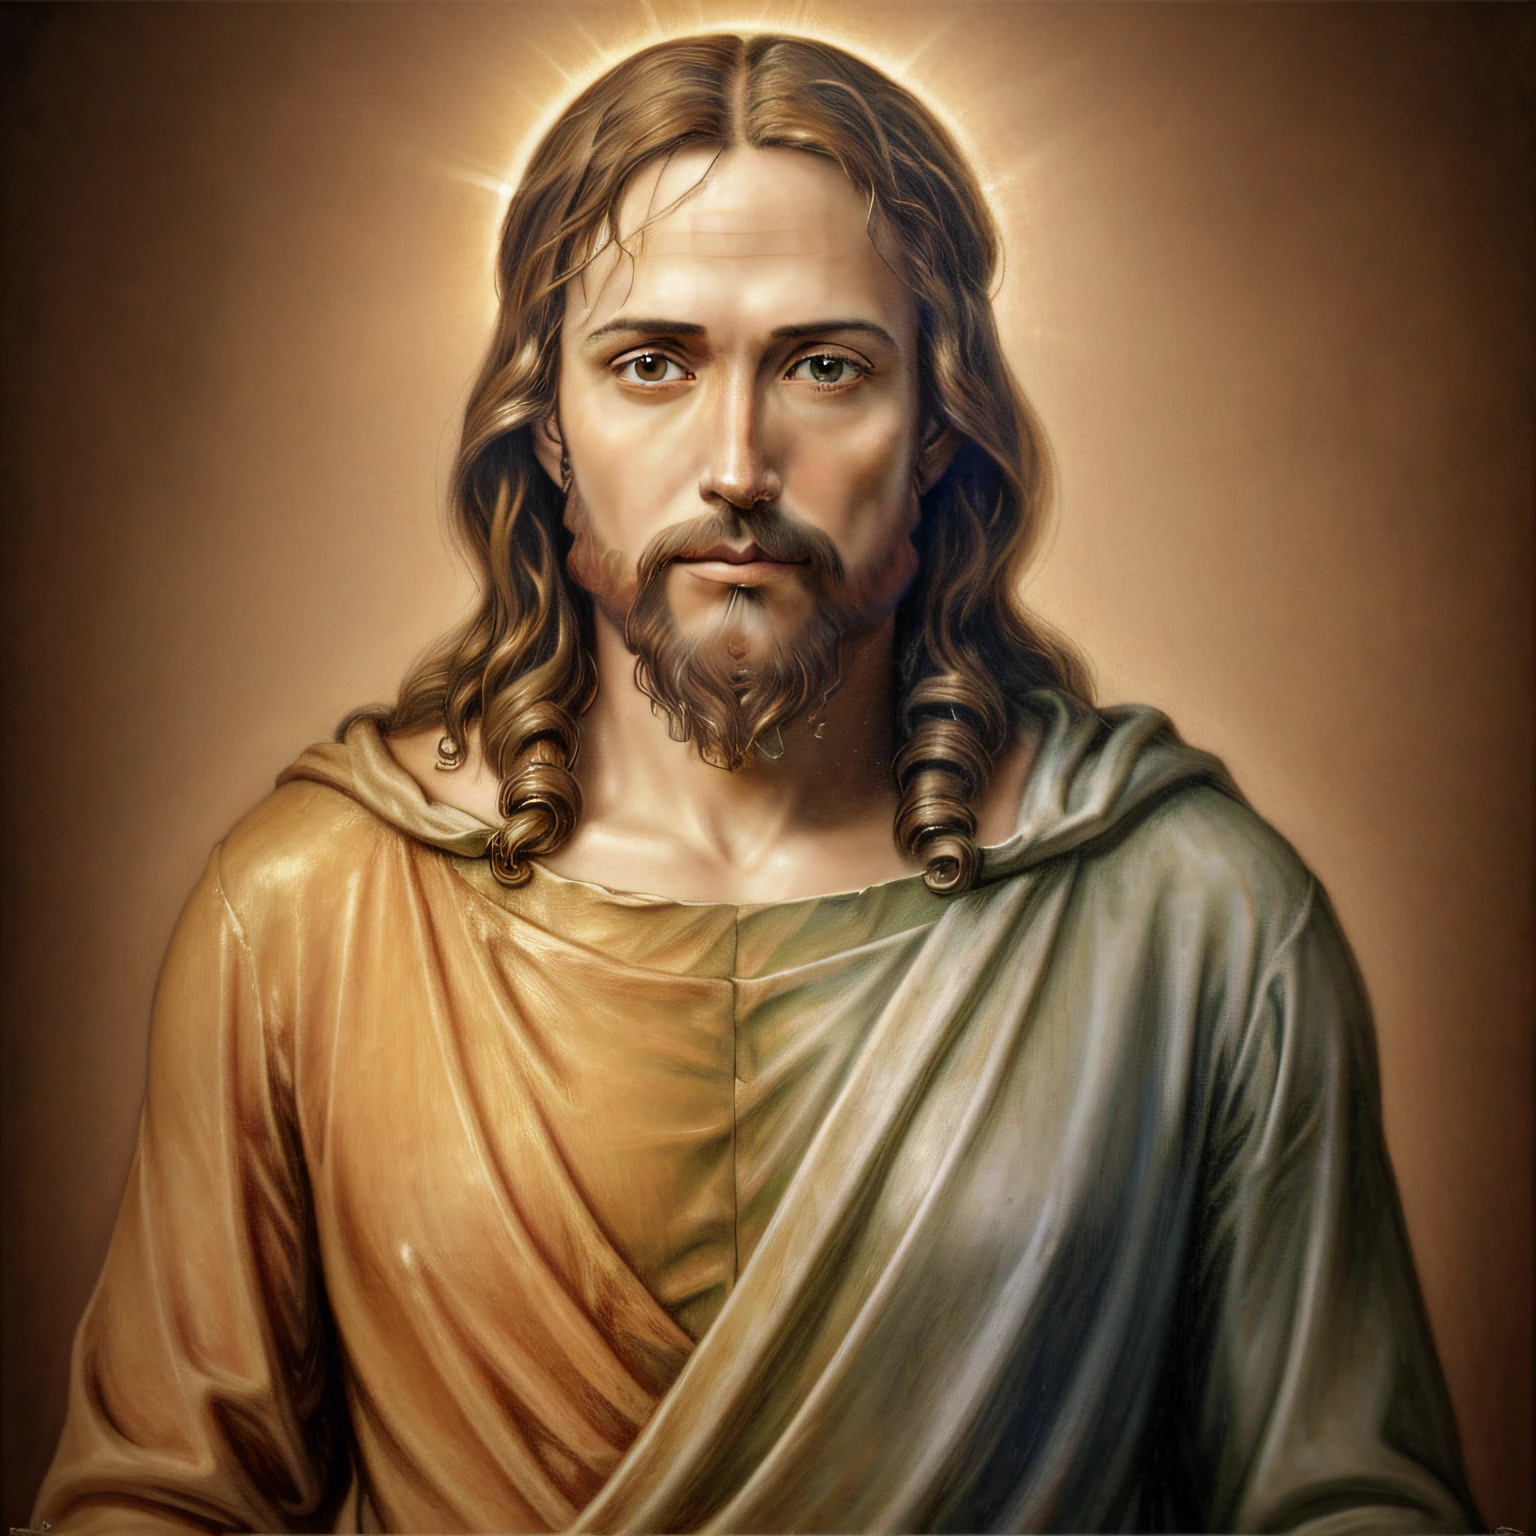 agregar_detalle:1, imagen realista de Jesucristo, la mitad del cuerpo, agregar_detalle:Luz y distante del cielo por encima de la cabeza